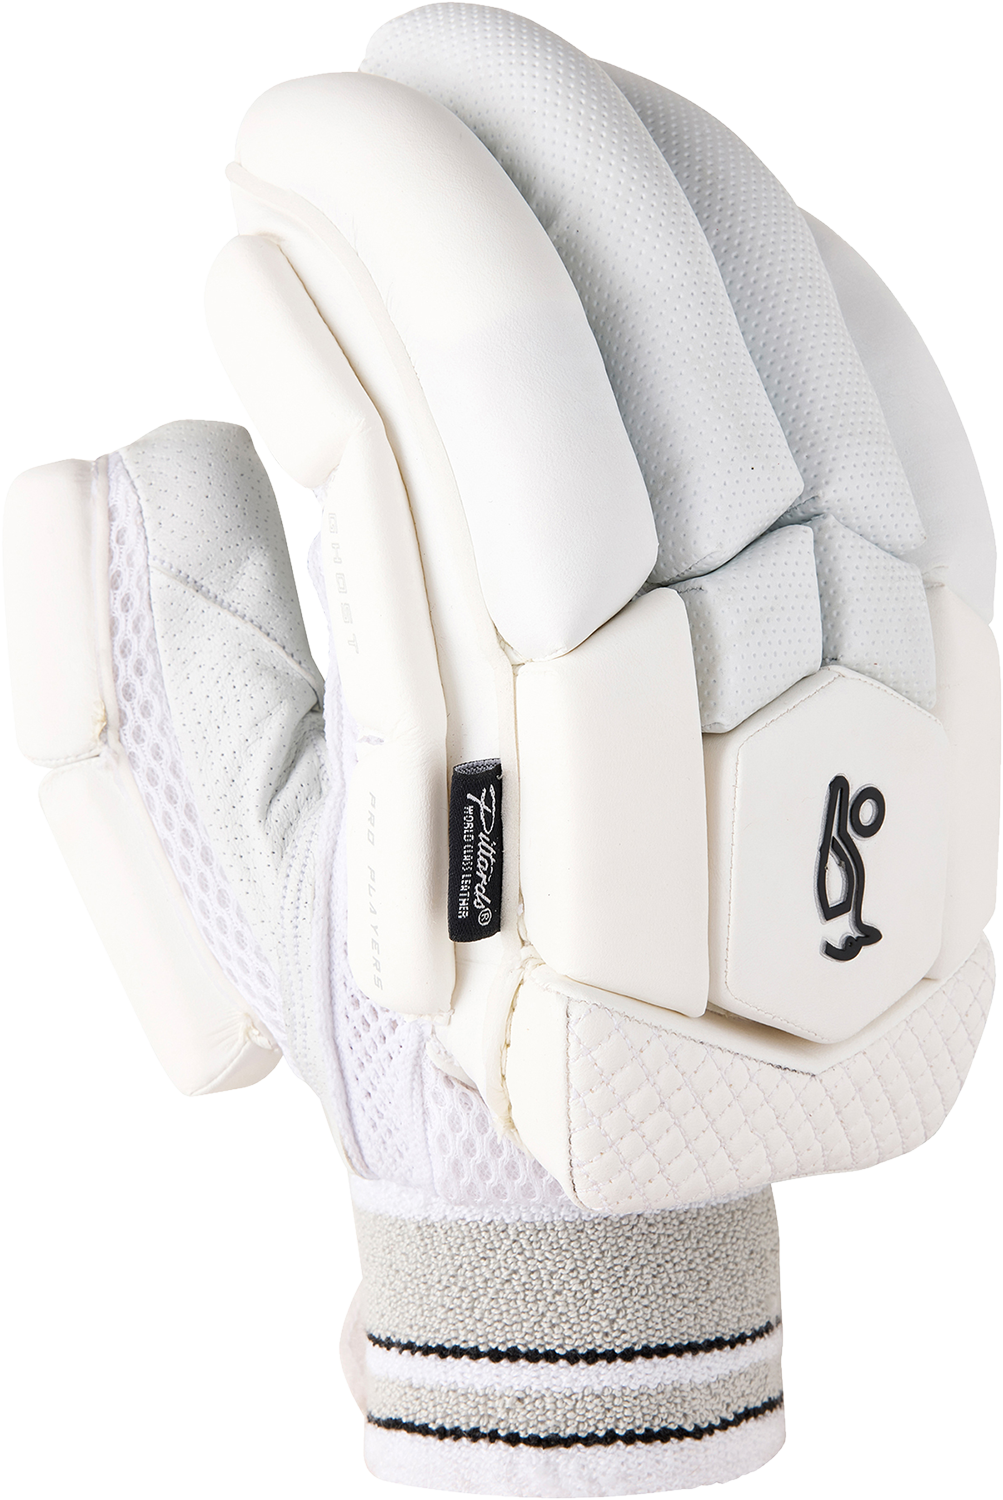 kookaburra ghost pro 1.0 gloves